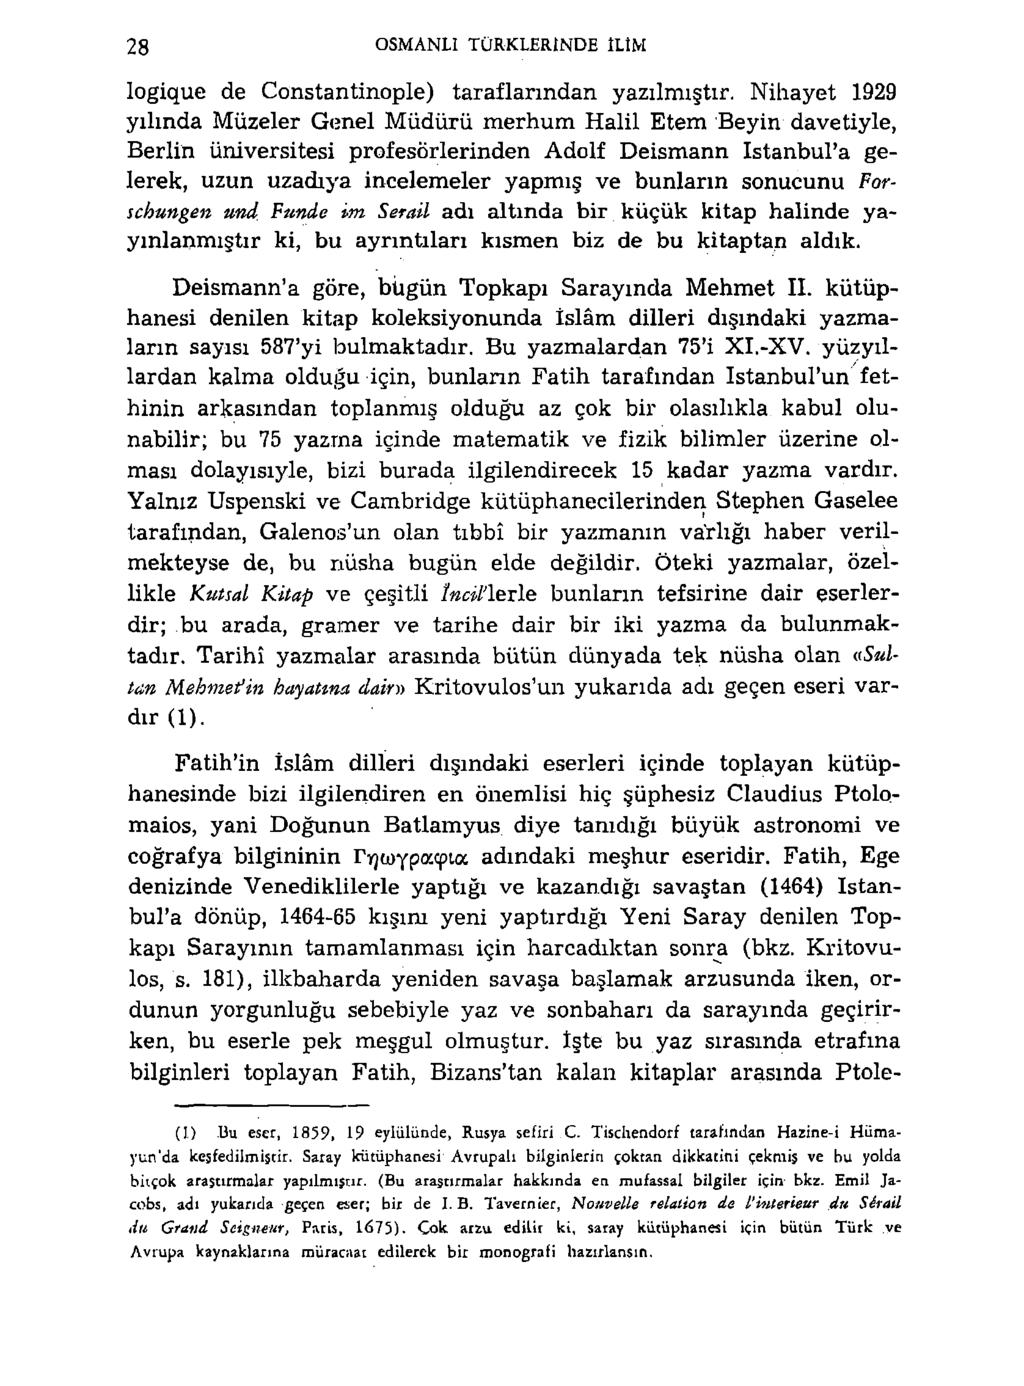 28 OSMANLI TÜRKLERINDE ILIM logique de Constantinople) taraflarından yazılmıştır.